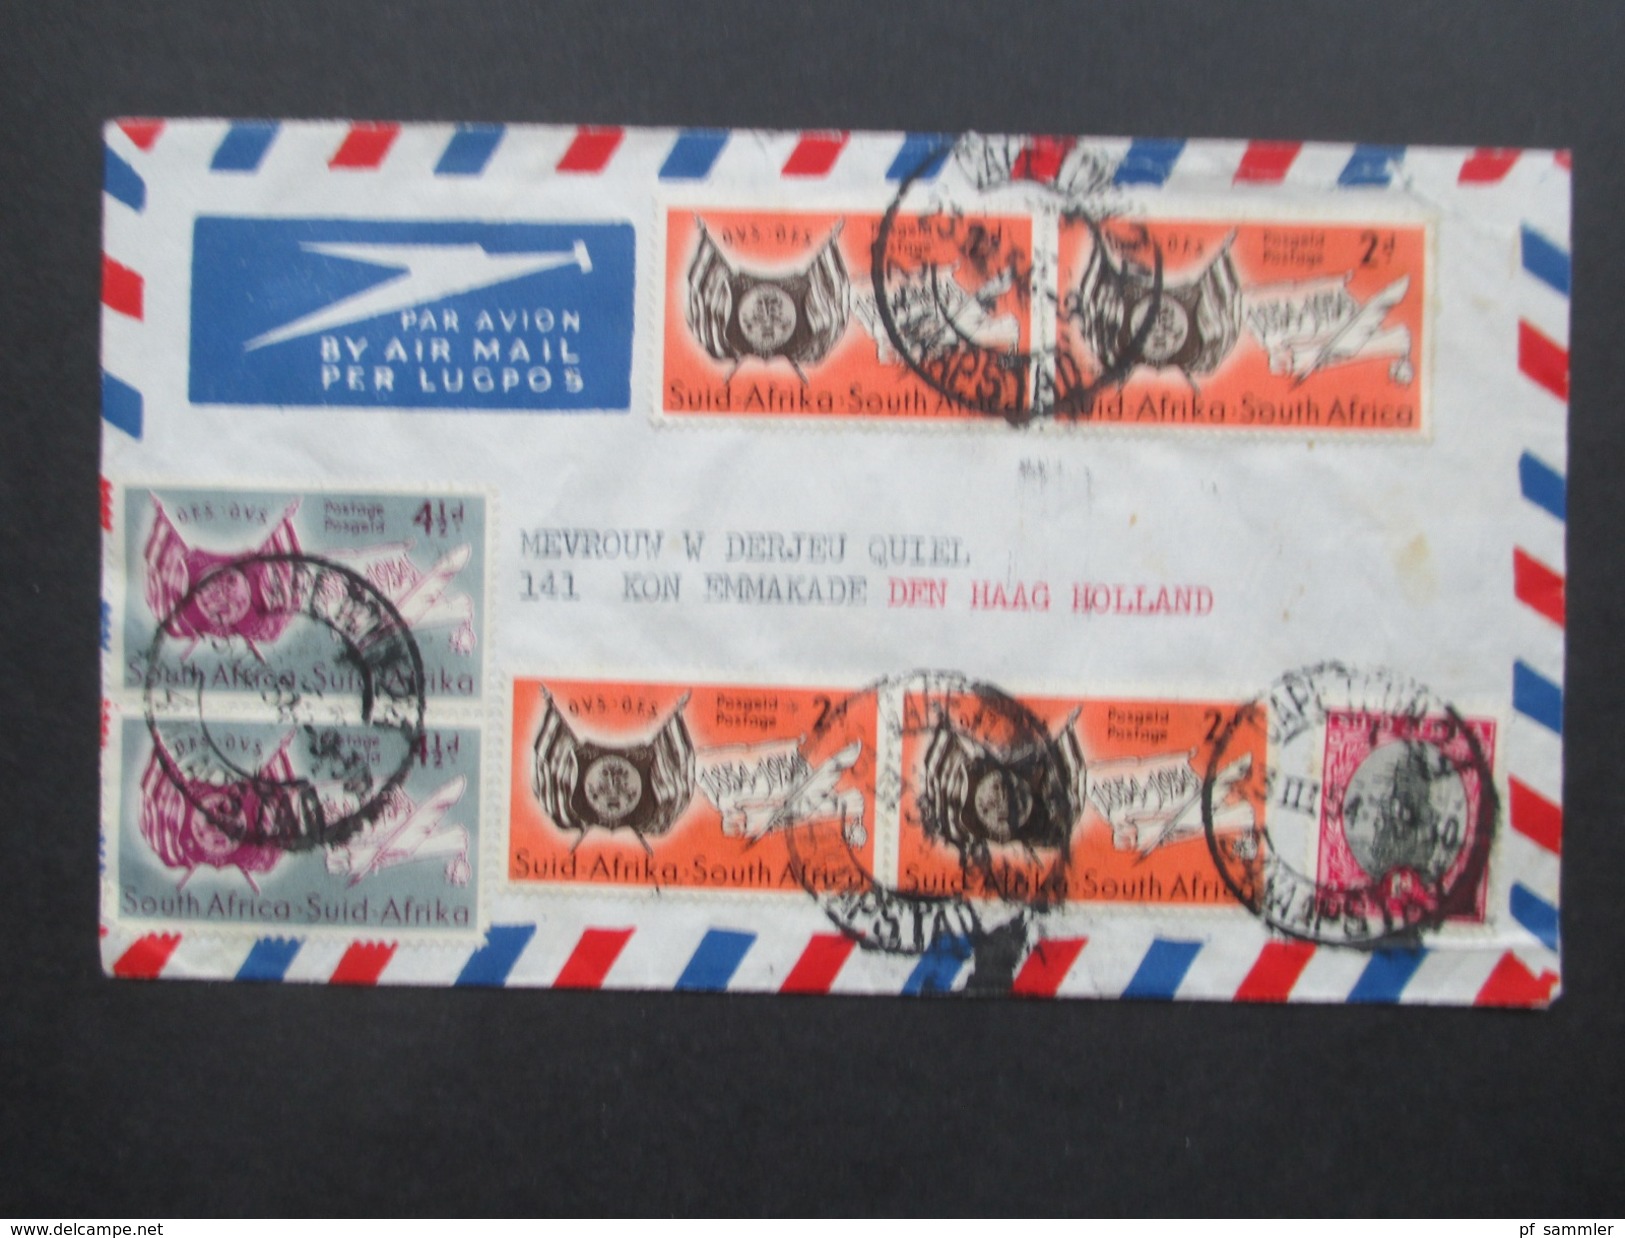 Südafrika Capetown 1954 Brief Mit Interessanter MiF Nach Den Haag Holland. Luftpost / Air Mail - Cartas